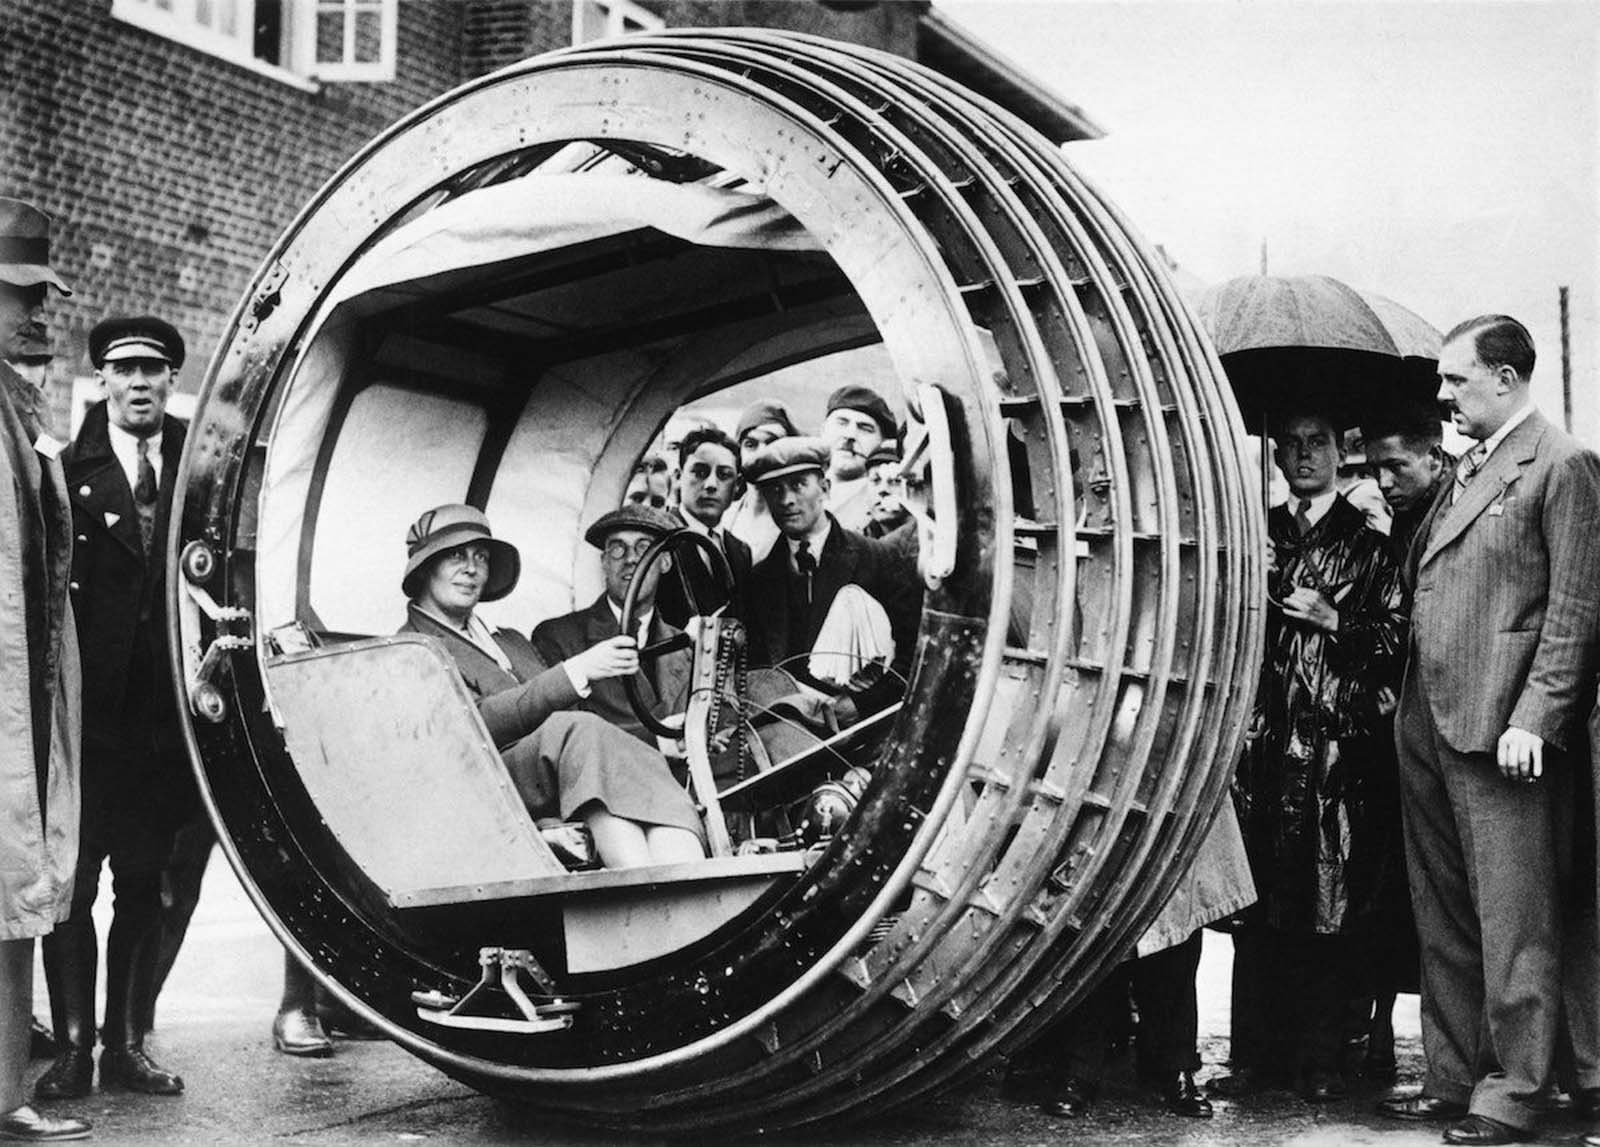 Weybridge, Surrey, England, UK -The Dynasphere is demonstrated, 1932.